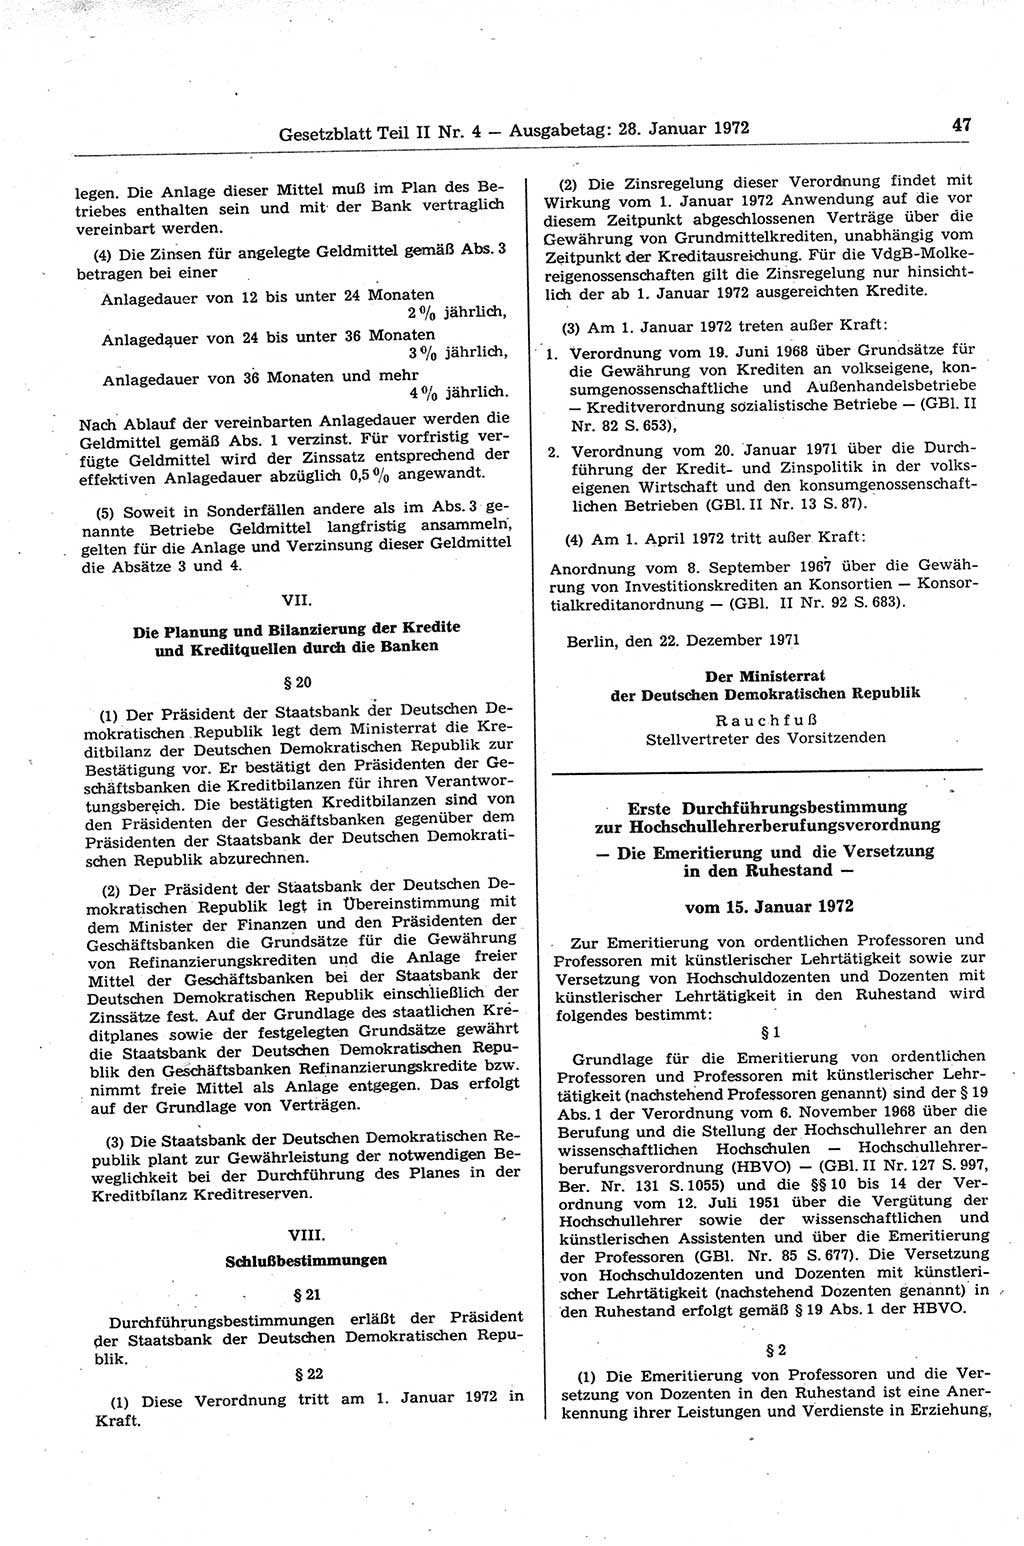 Gesetzblatt (GBl.) der Deutschen Demokratischen Republik (DDR) Teil ⅠⅠ 1972, Seite 47 (GBl. DDR ⅠⅠ 1972, S. 47)